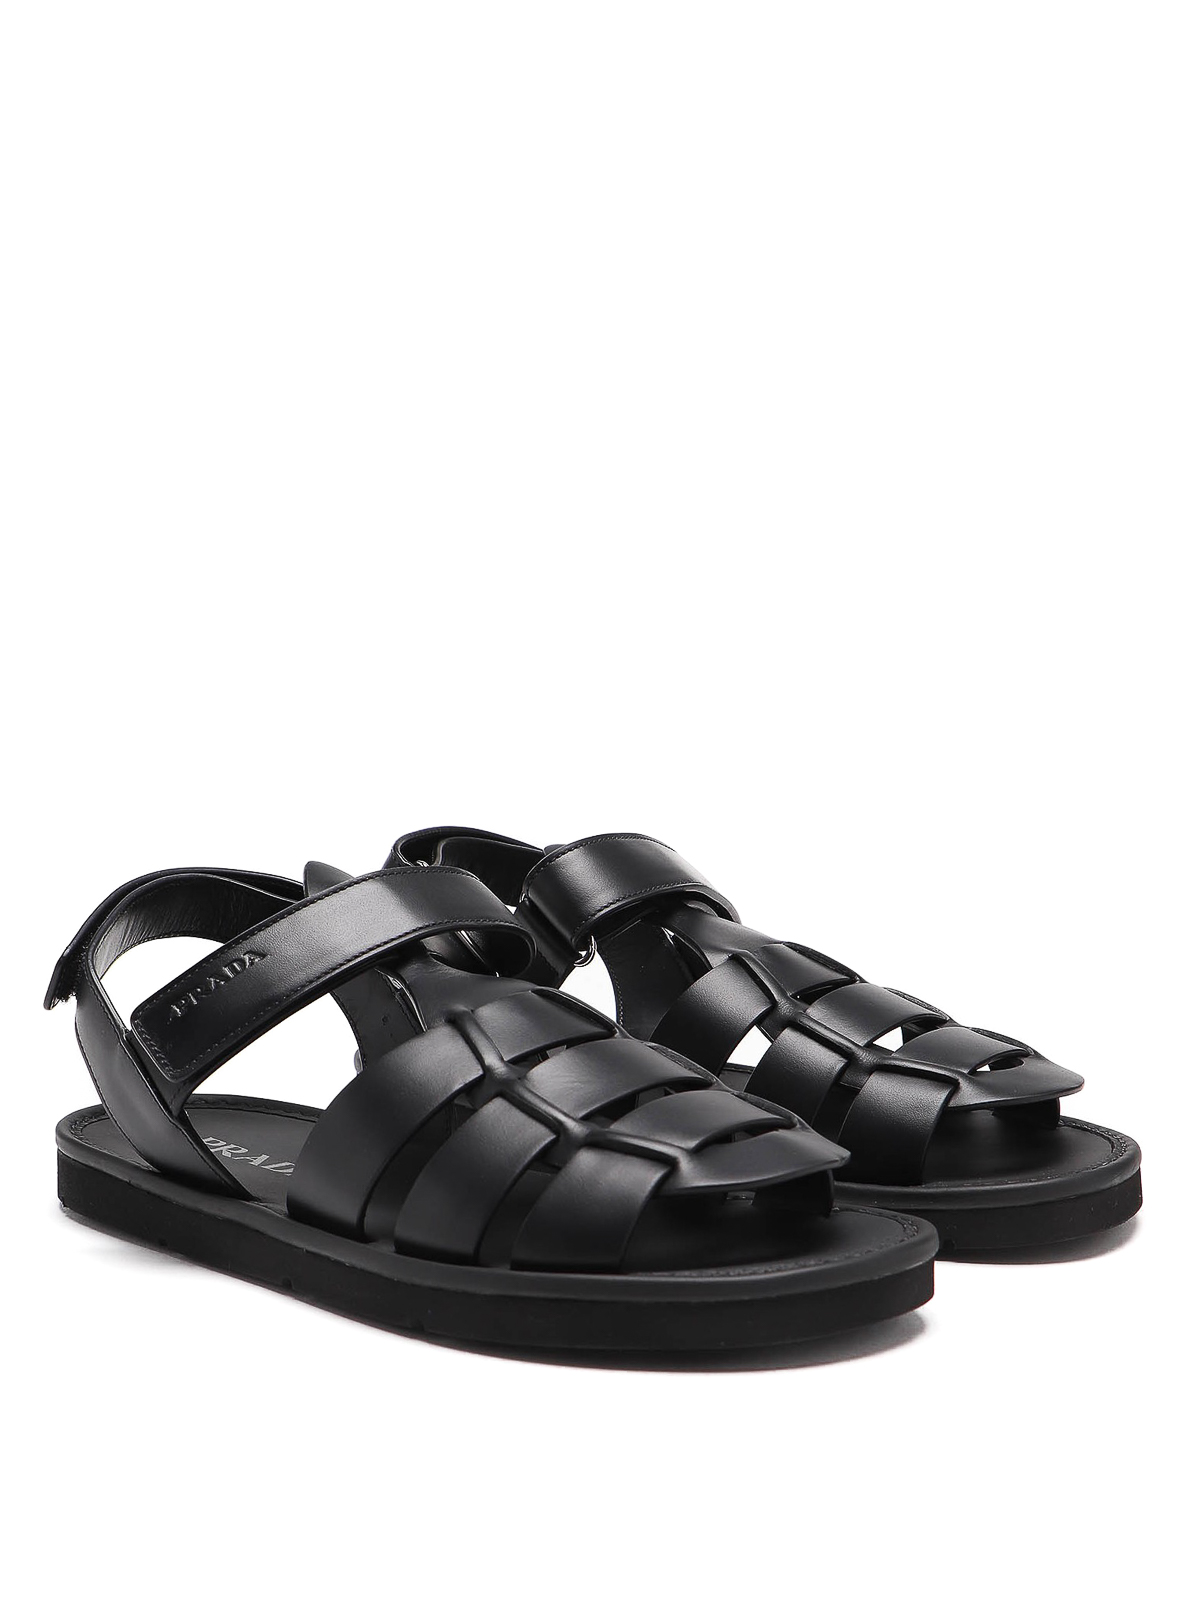 Sandals Prada - Fisherman sandals - 2X3052A21F0002 | Shop online at iKRIX